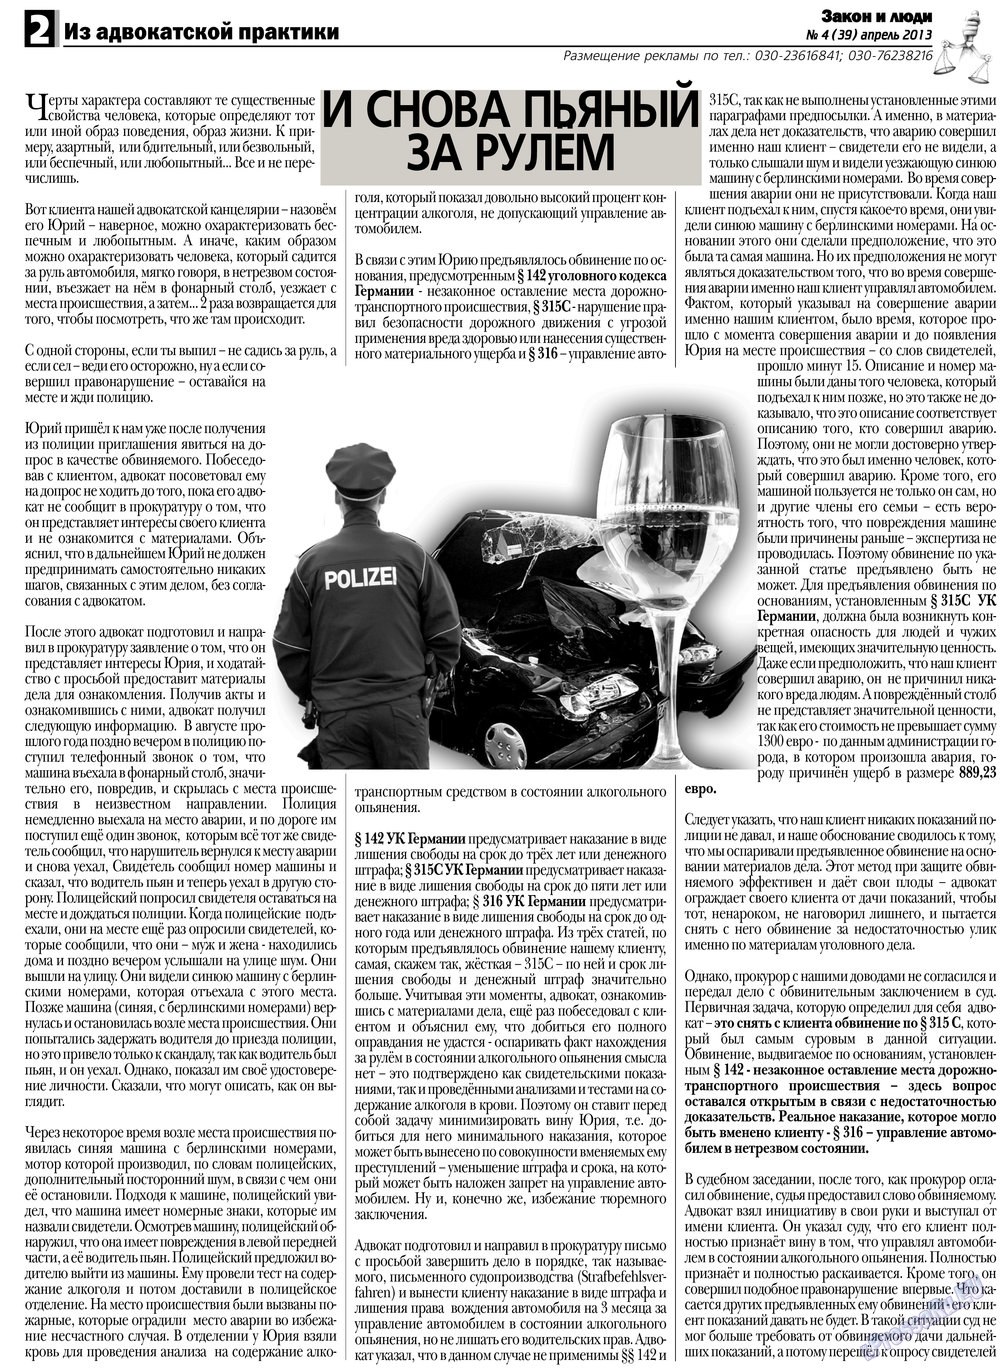 Закон и люди (газета). 2013 год, номер 4, стр. 2